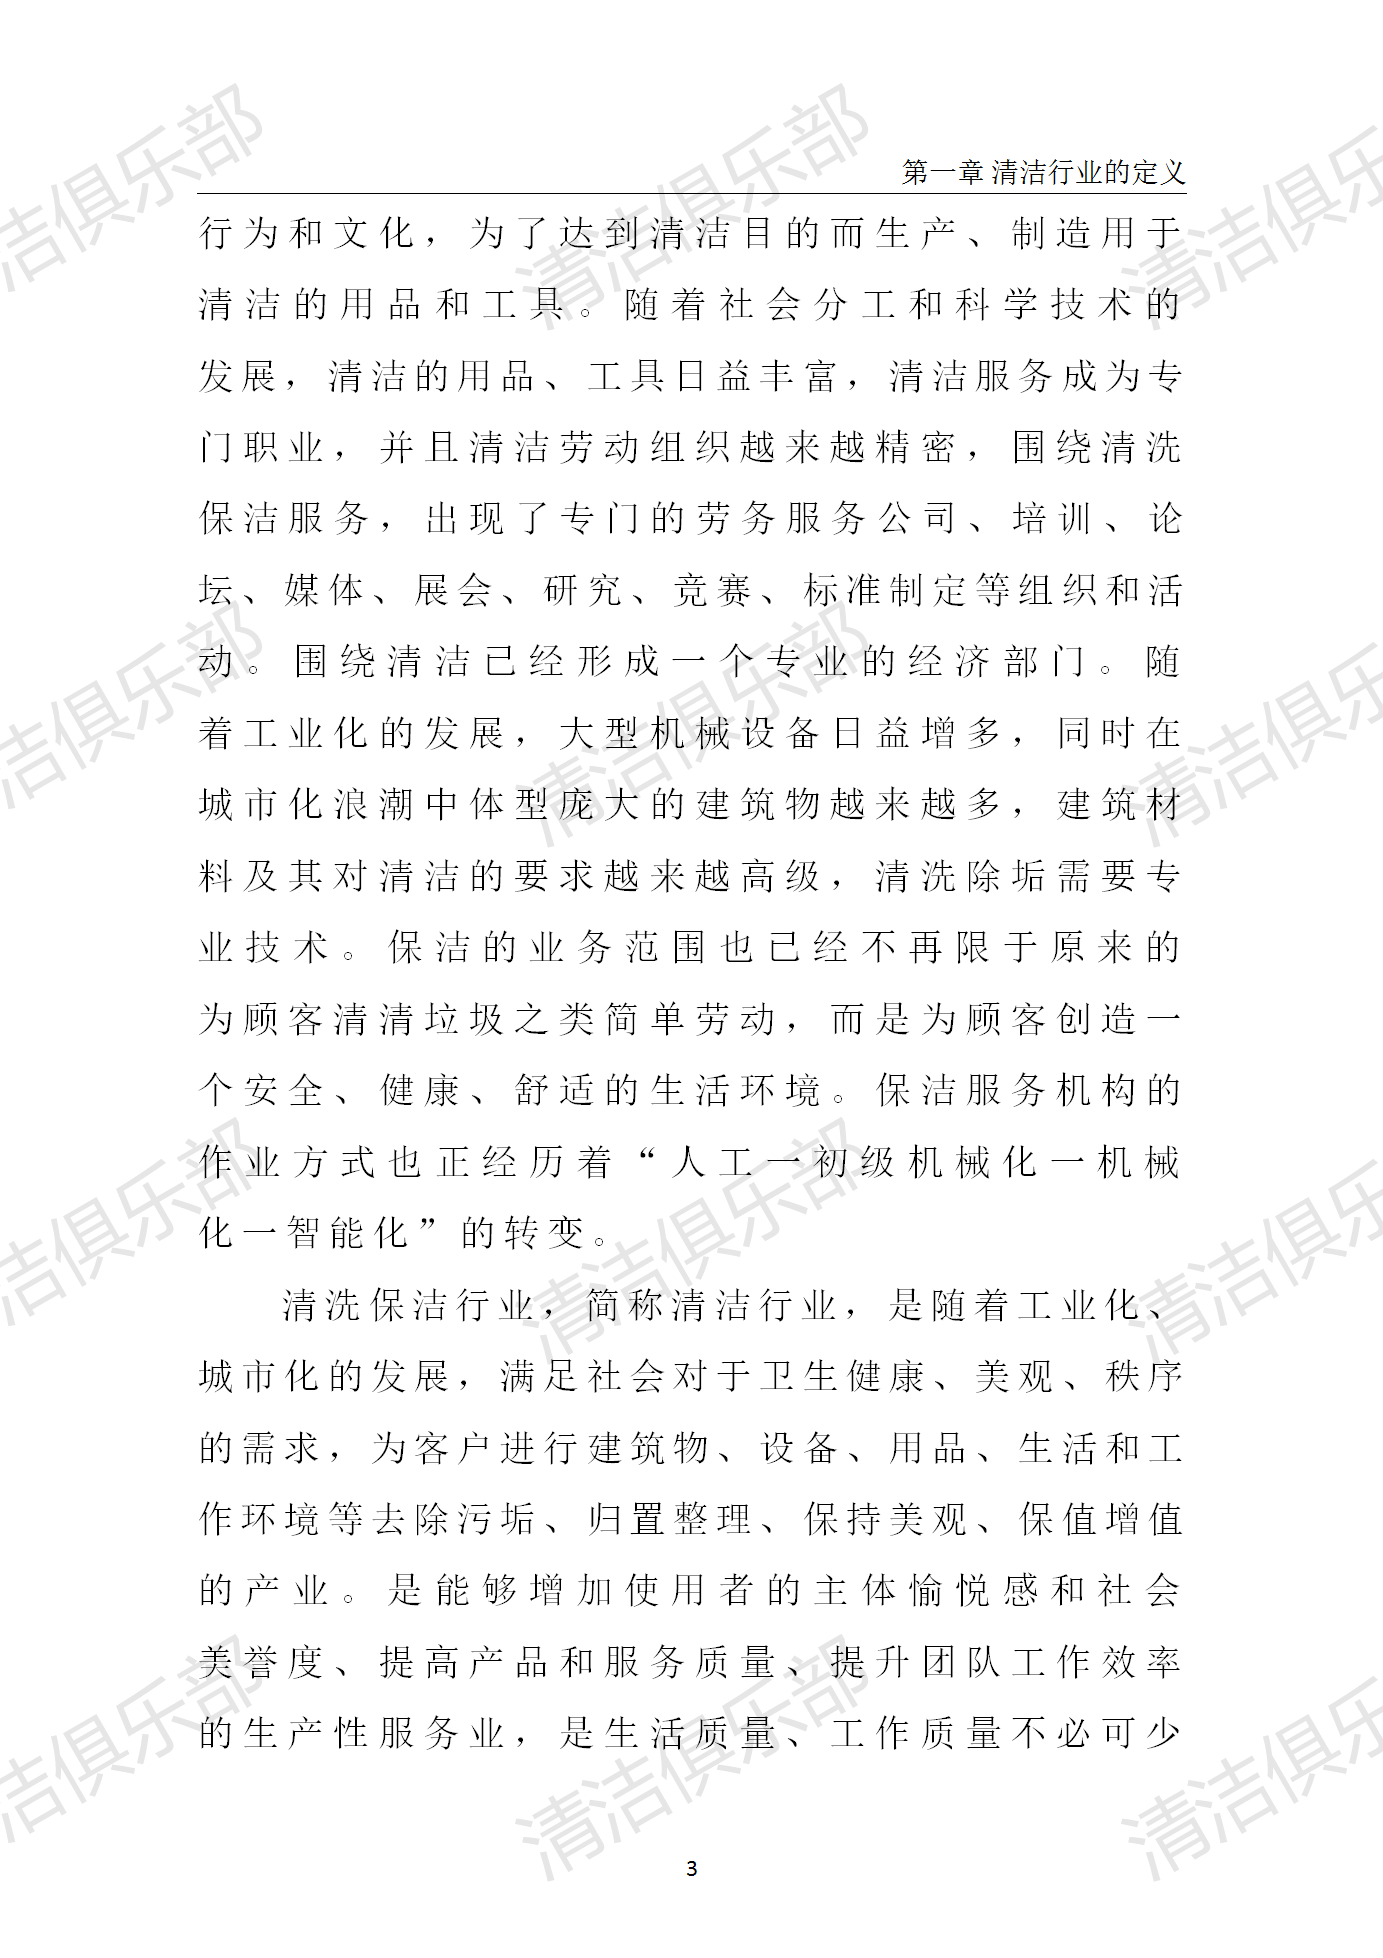 中国清洗保洁行业调研报告排版_13.png